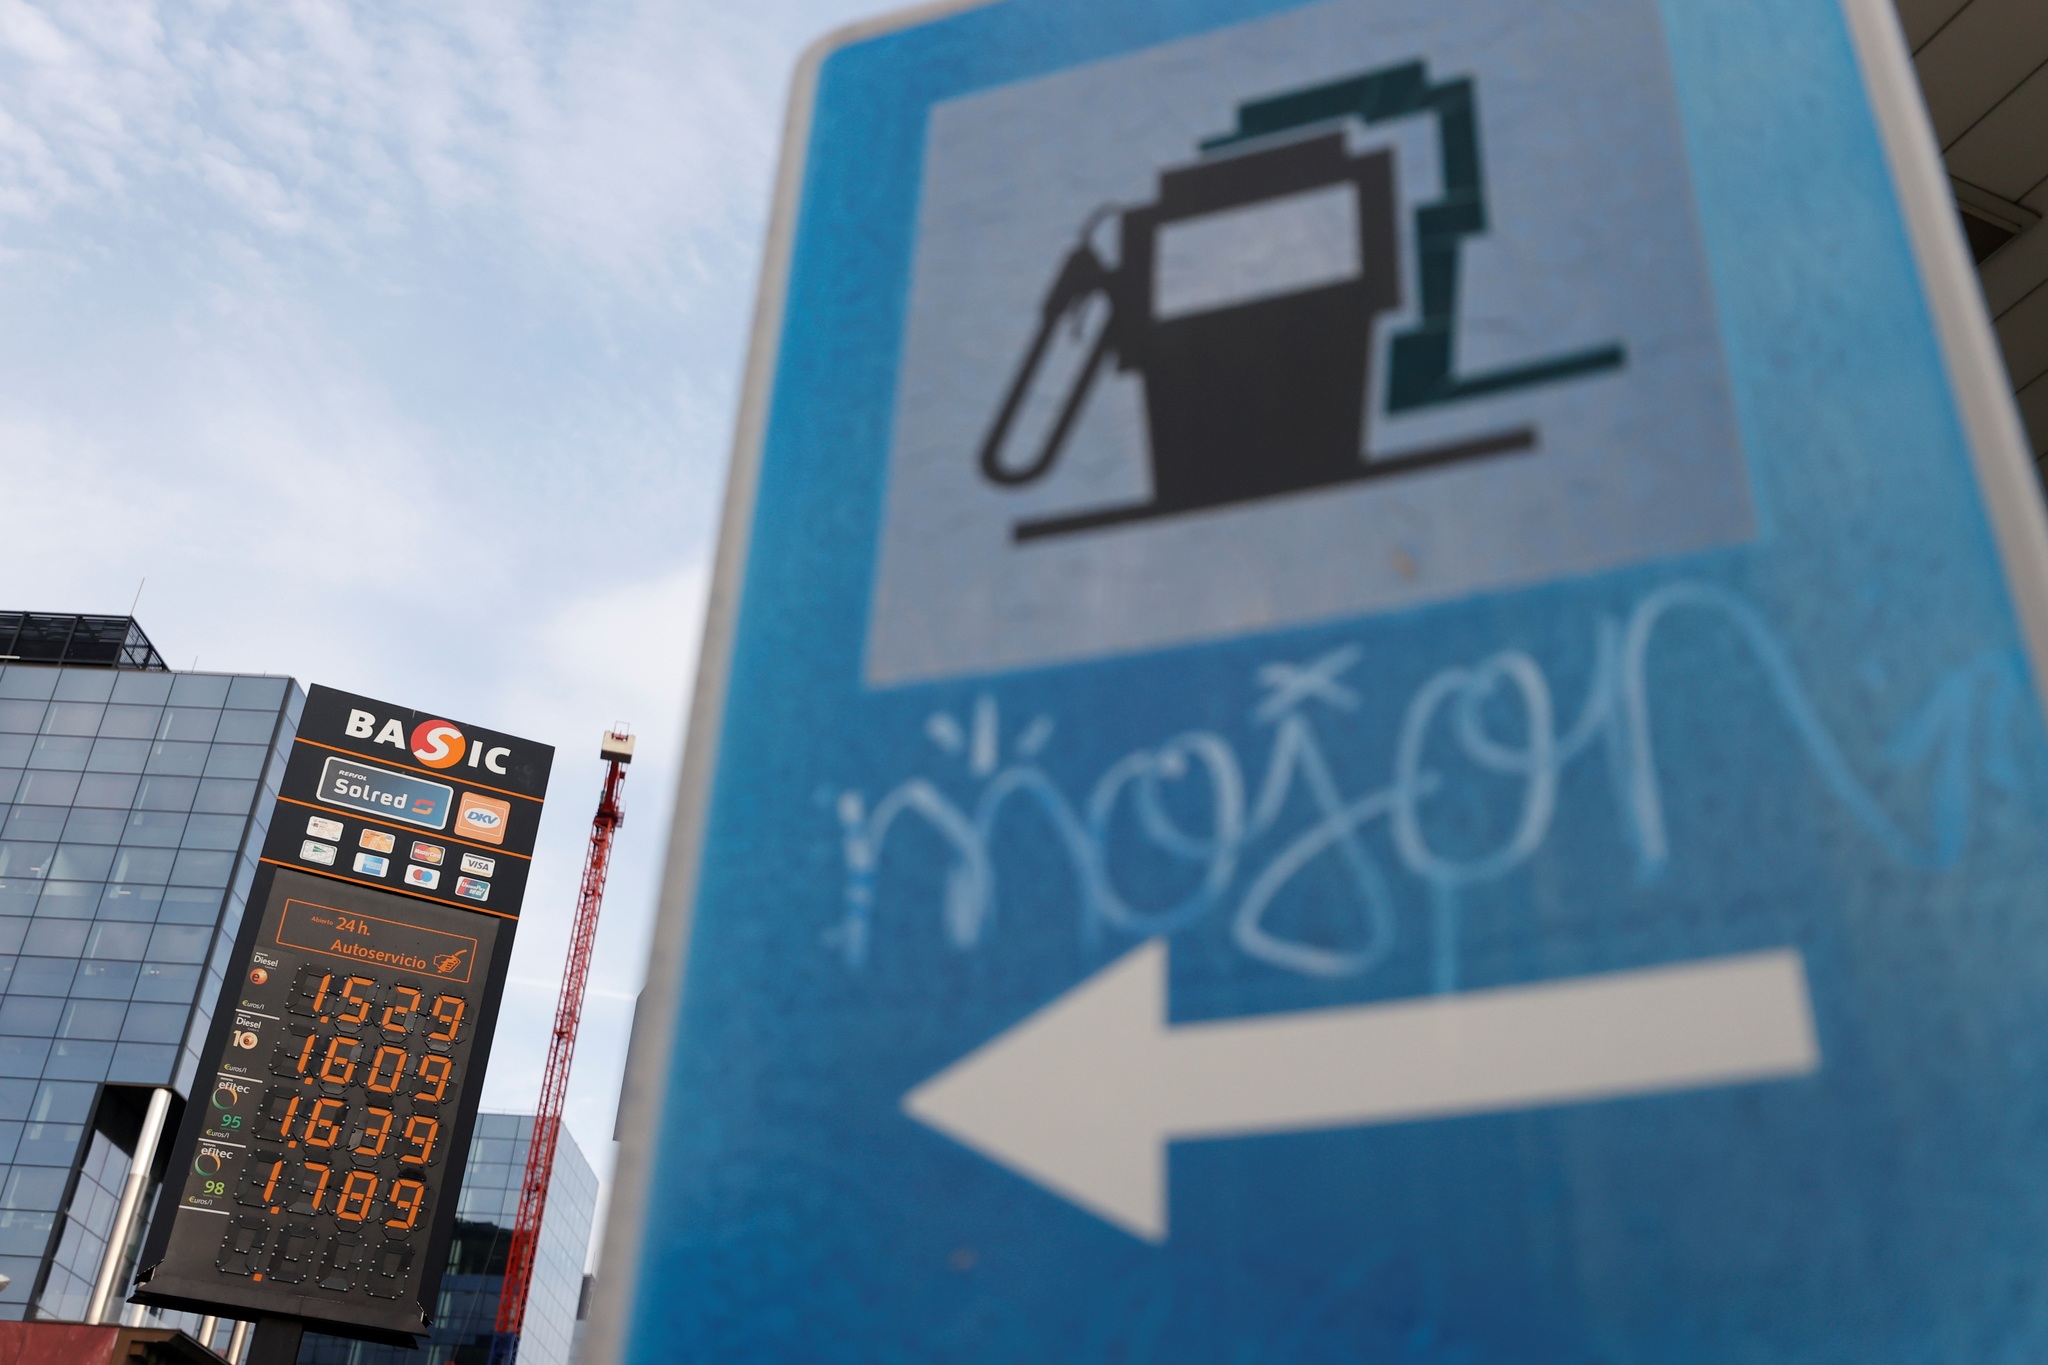 precio de combustibles - precio de gasolina - precio de diesel - precio record - Espaa